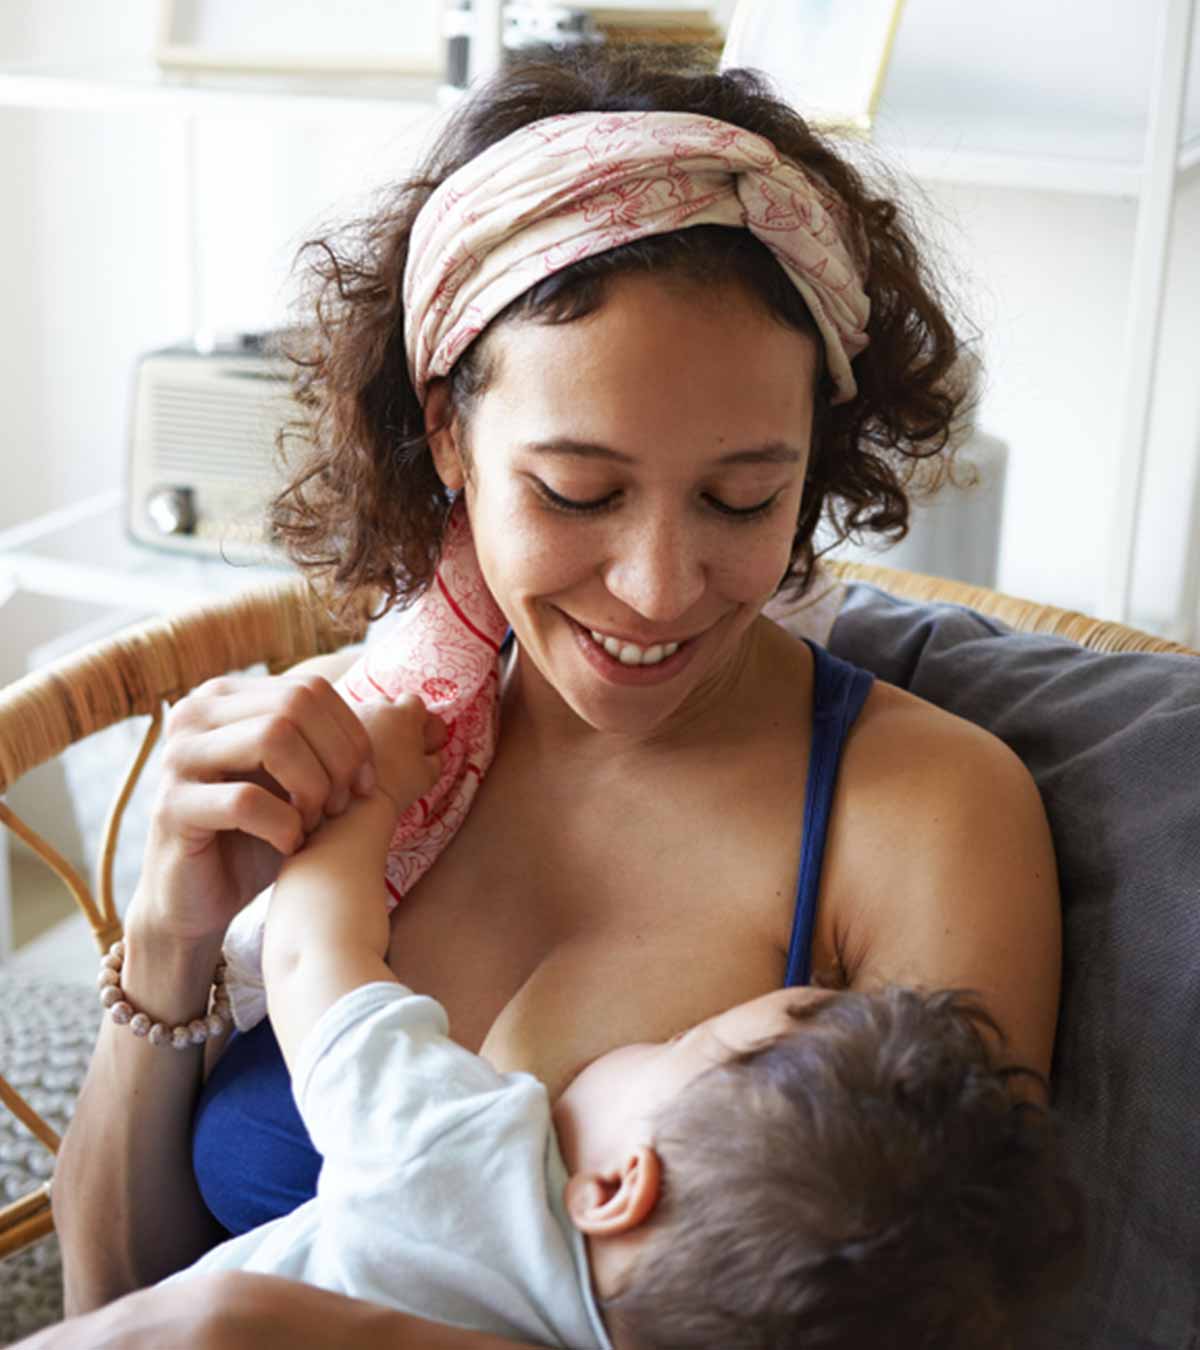 研究人员称，妈妈们面临的母乳喂养压力正在造成损失